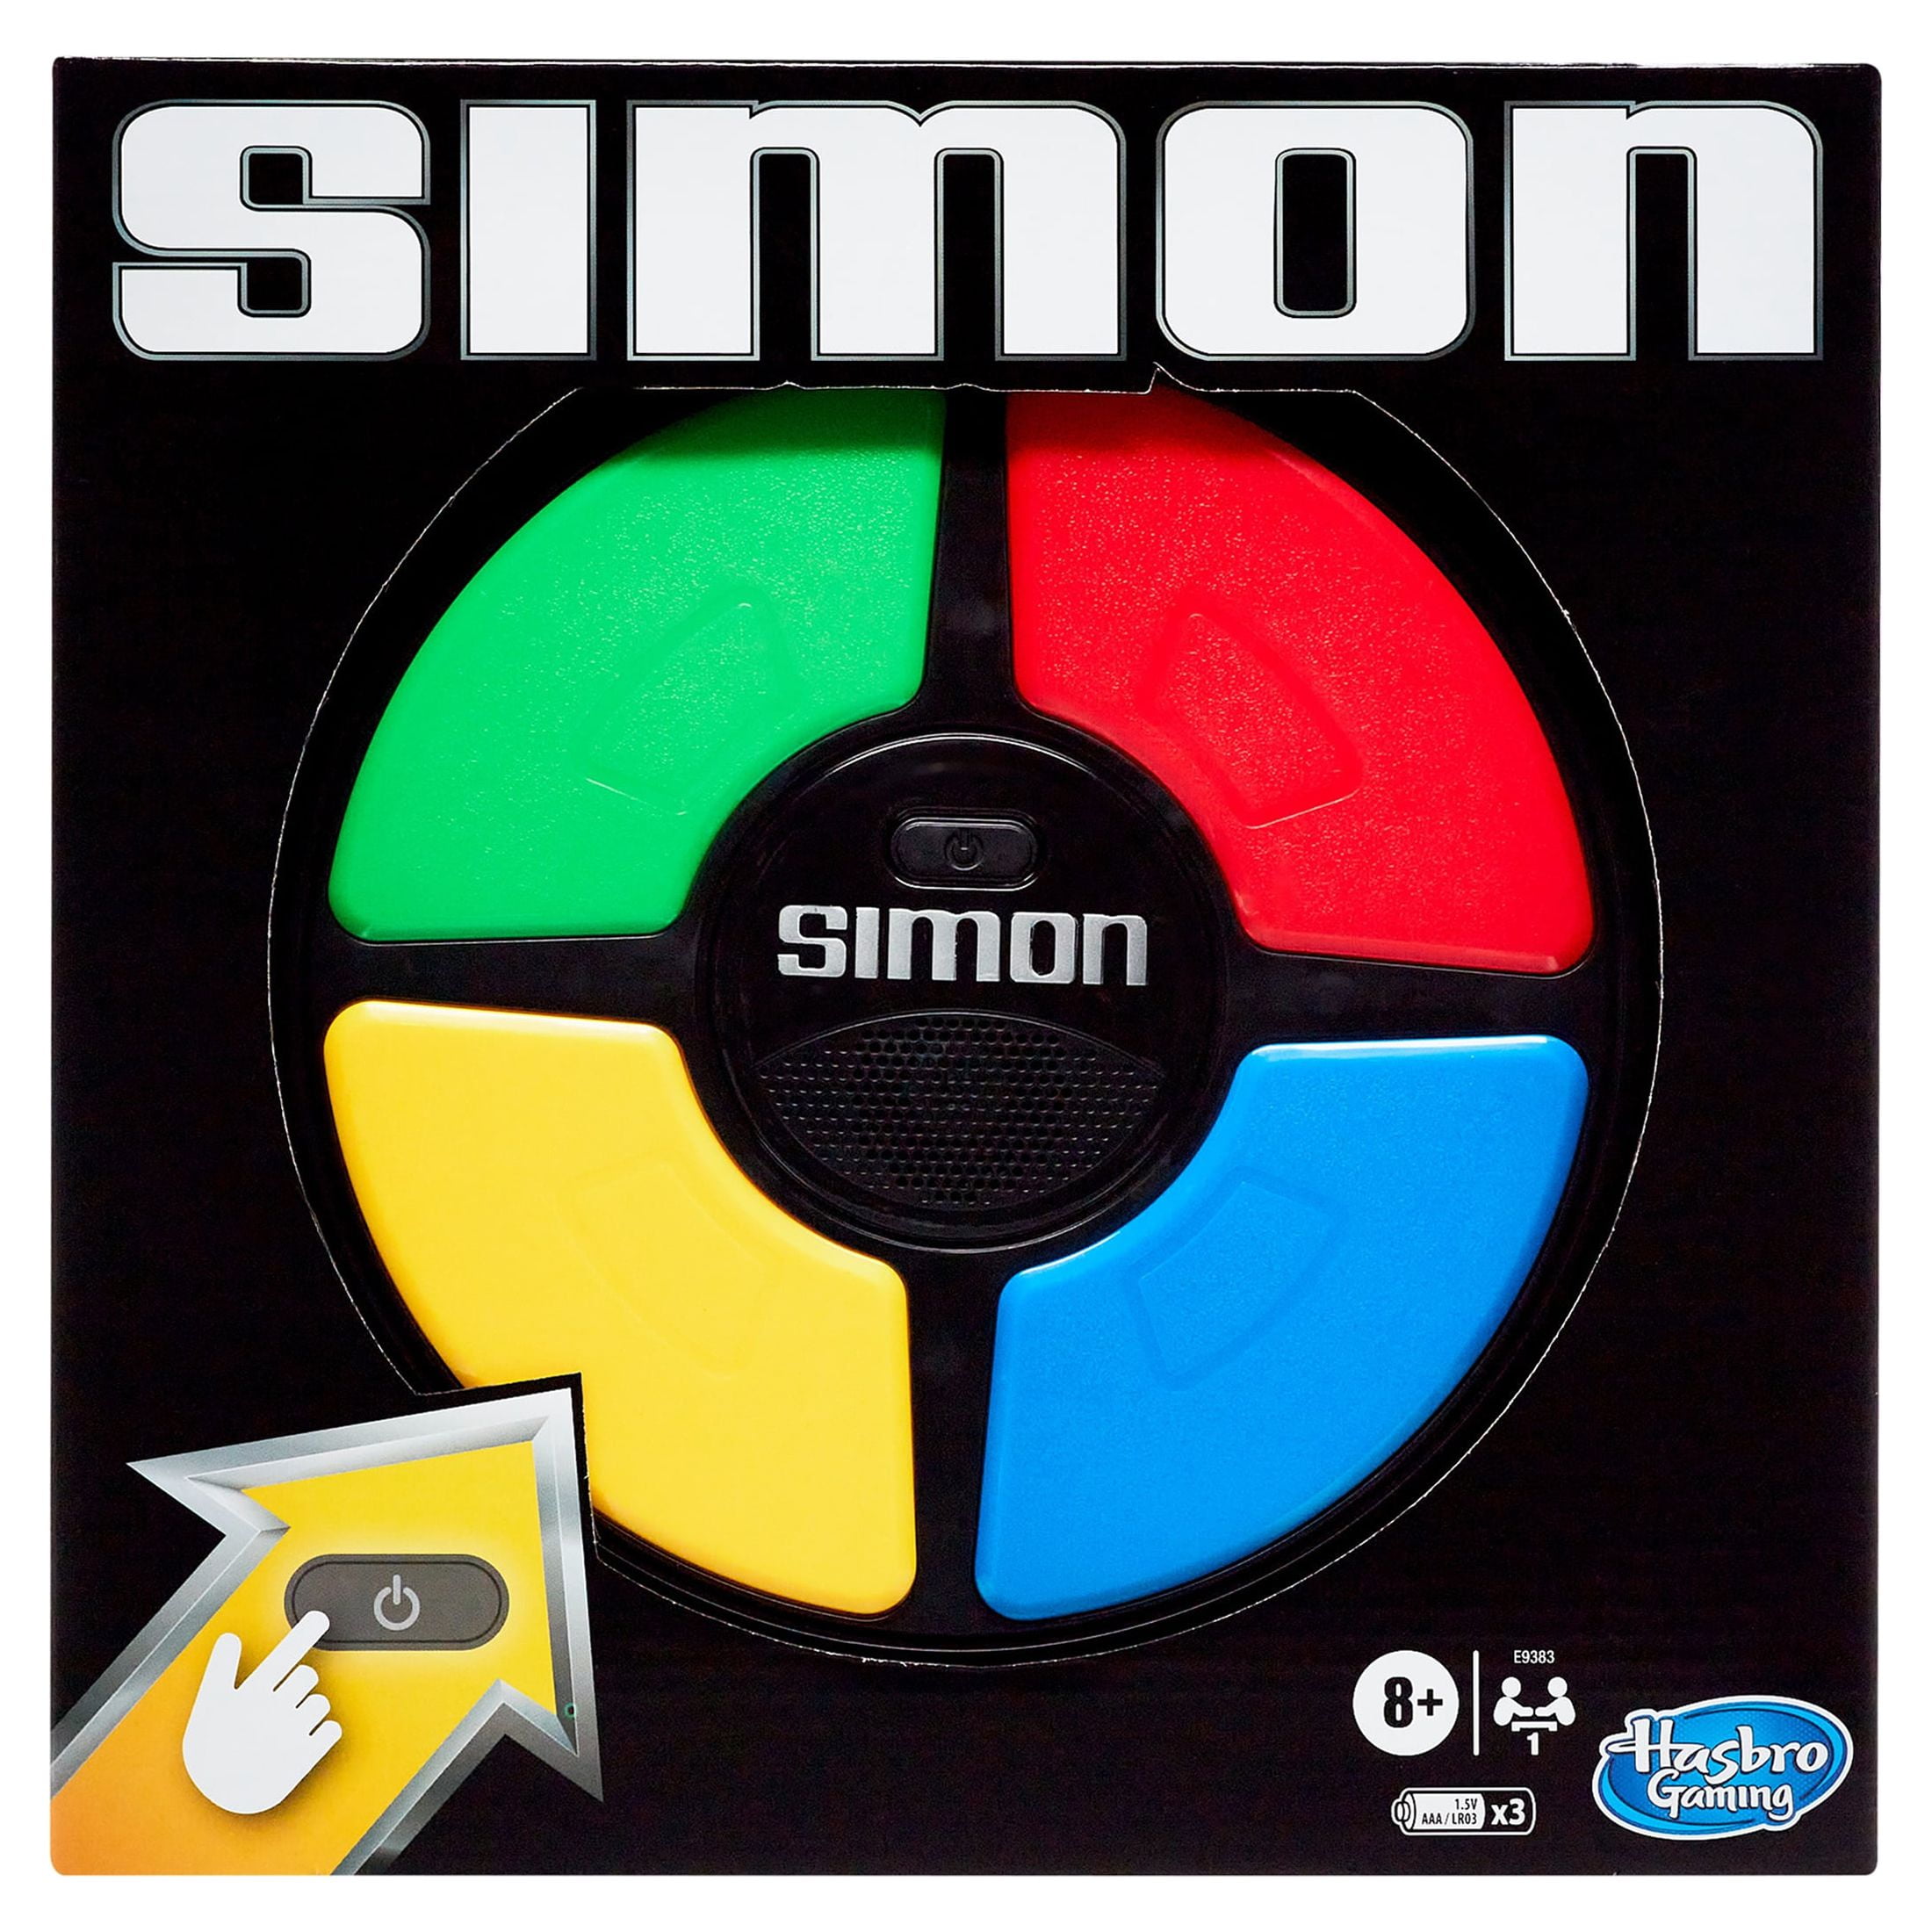 Simon games - Online & Free